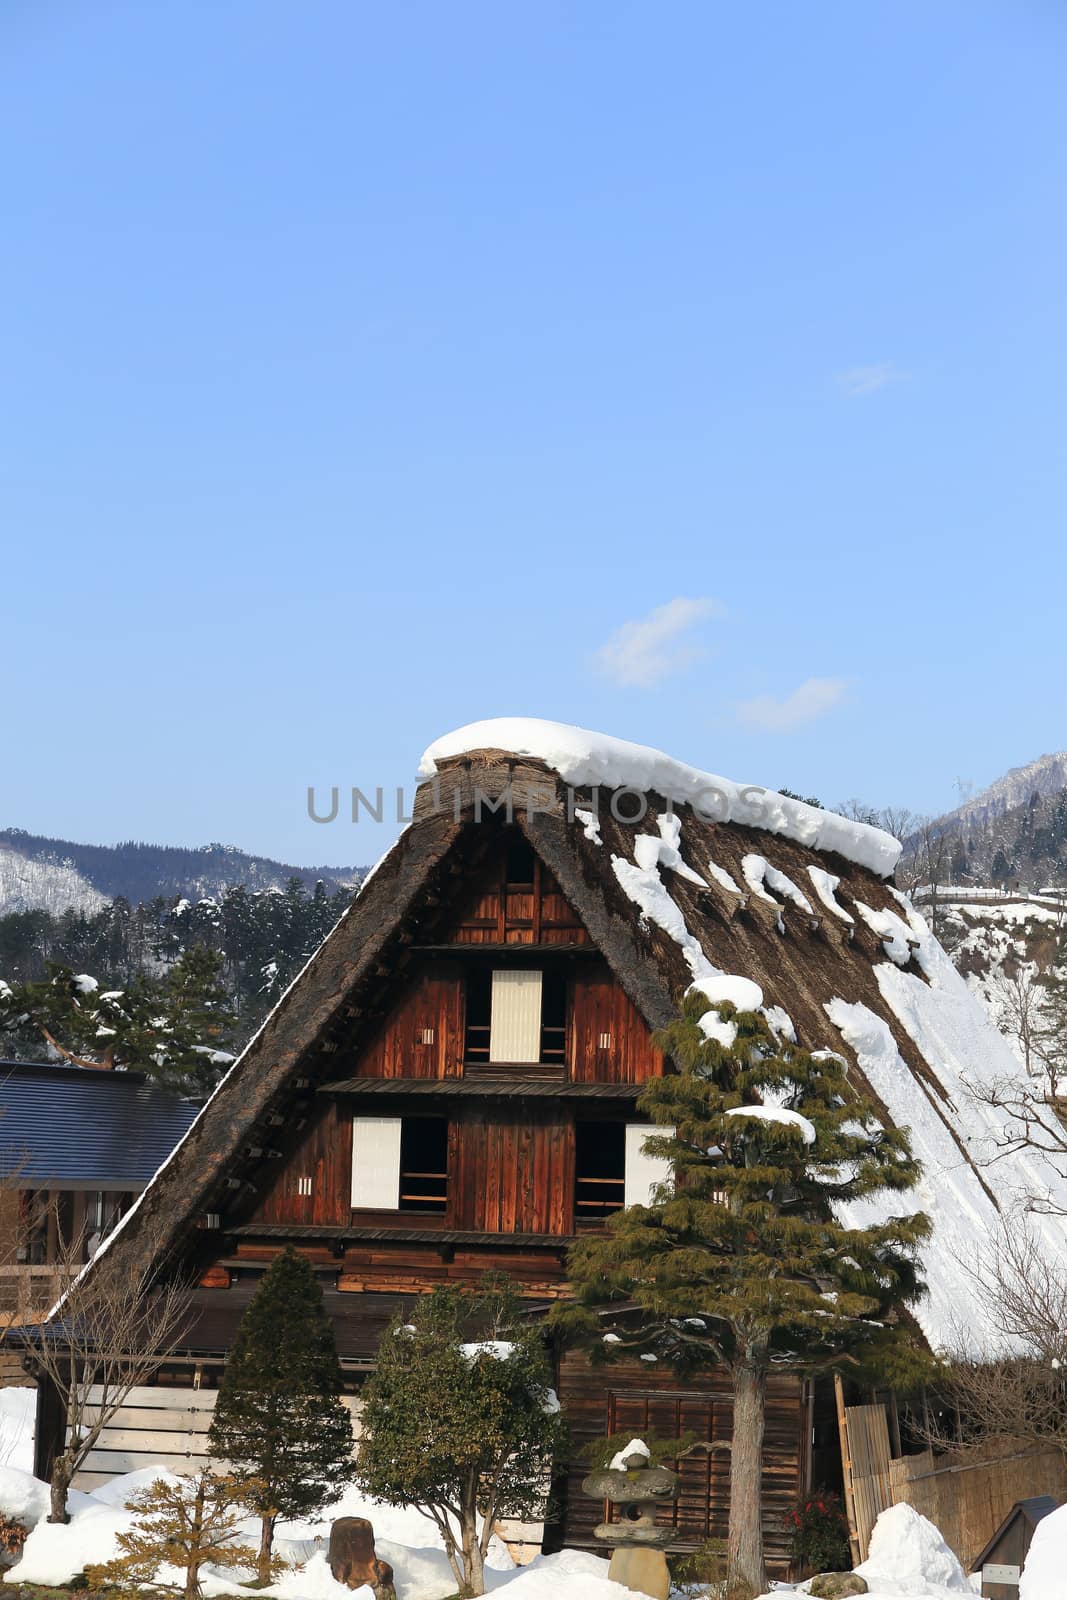 World Heritage, Historic Village of Shirakawago, Gifu, Japan